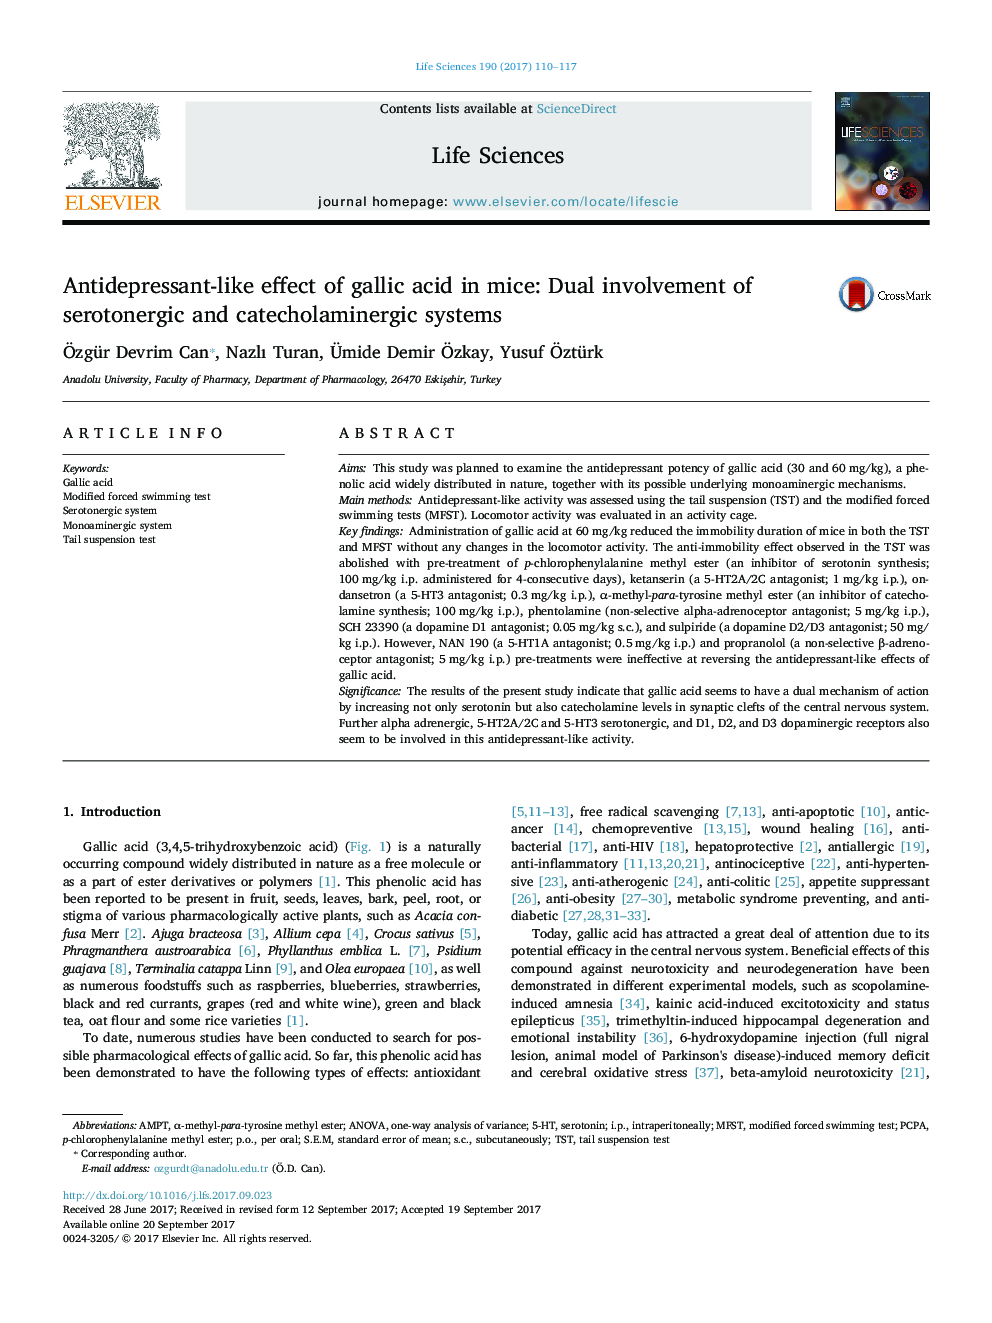 اثر ضد قارچی اسید گالیک در موش: ورود دوگانه سیستم های سروتونرژیک و کاتچولامینرژیک 